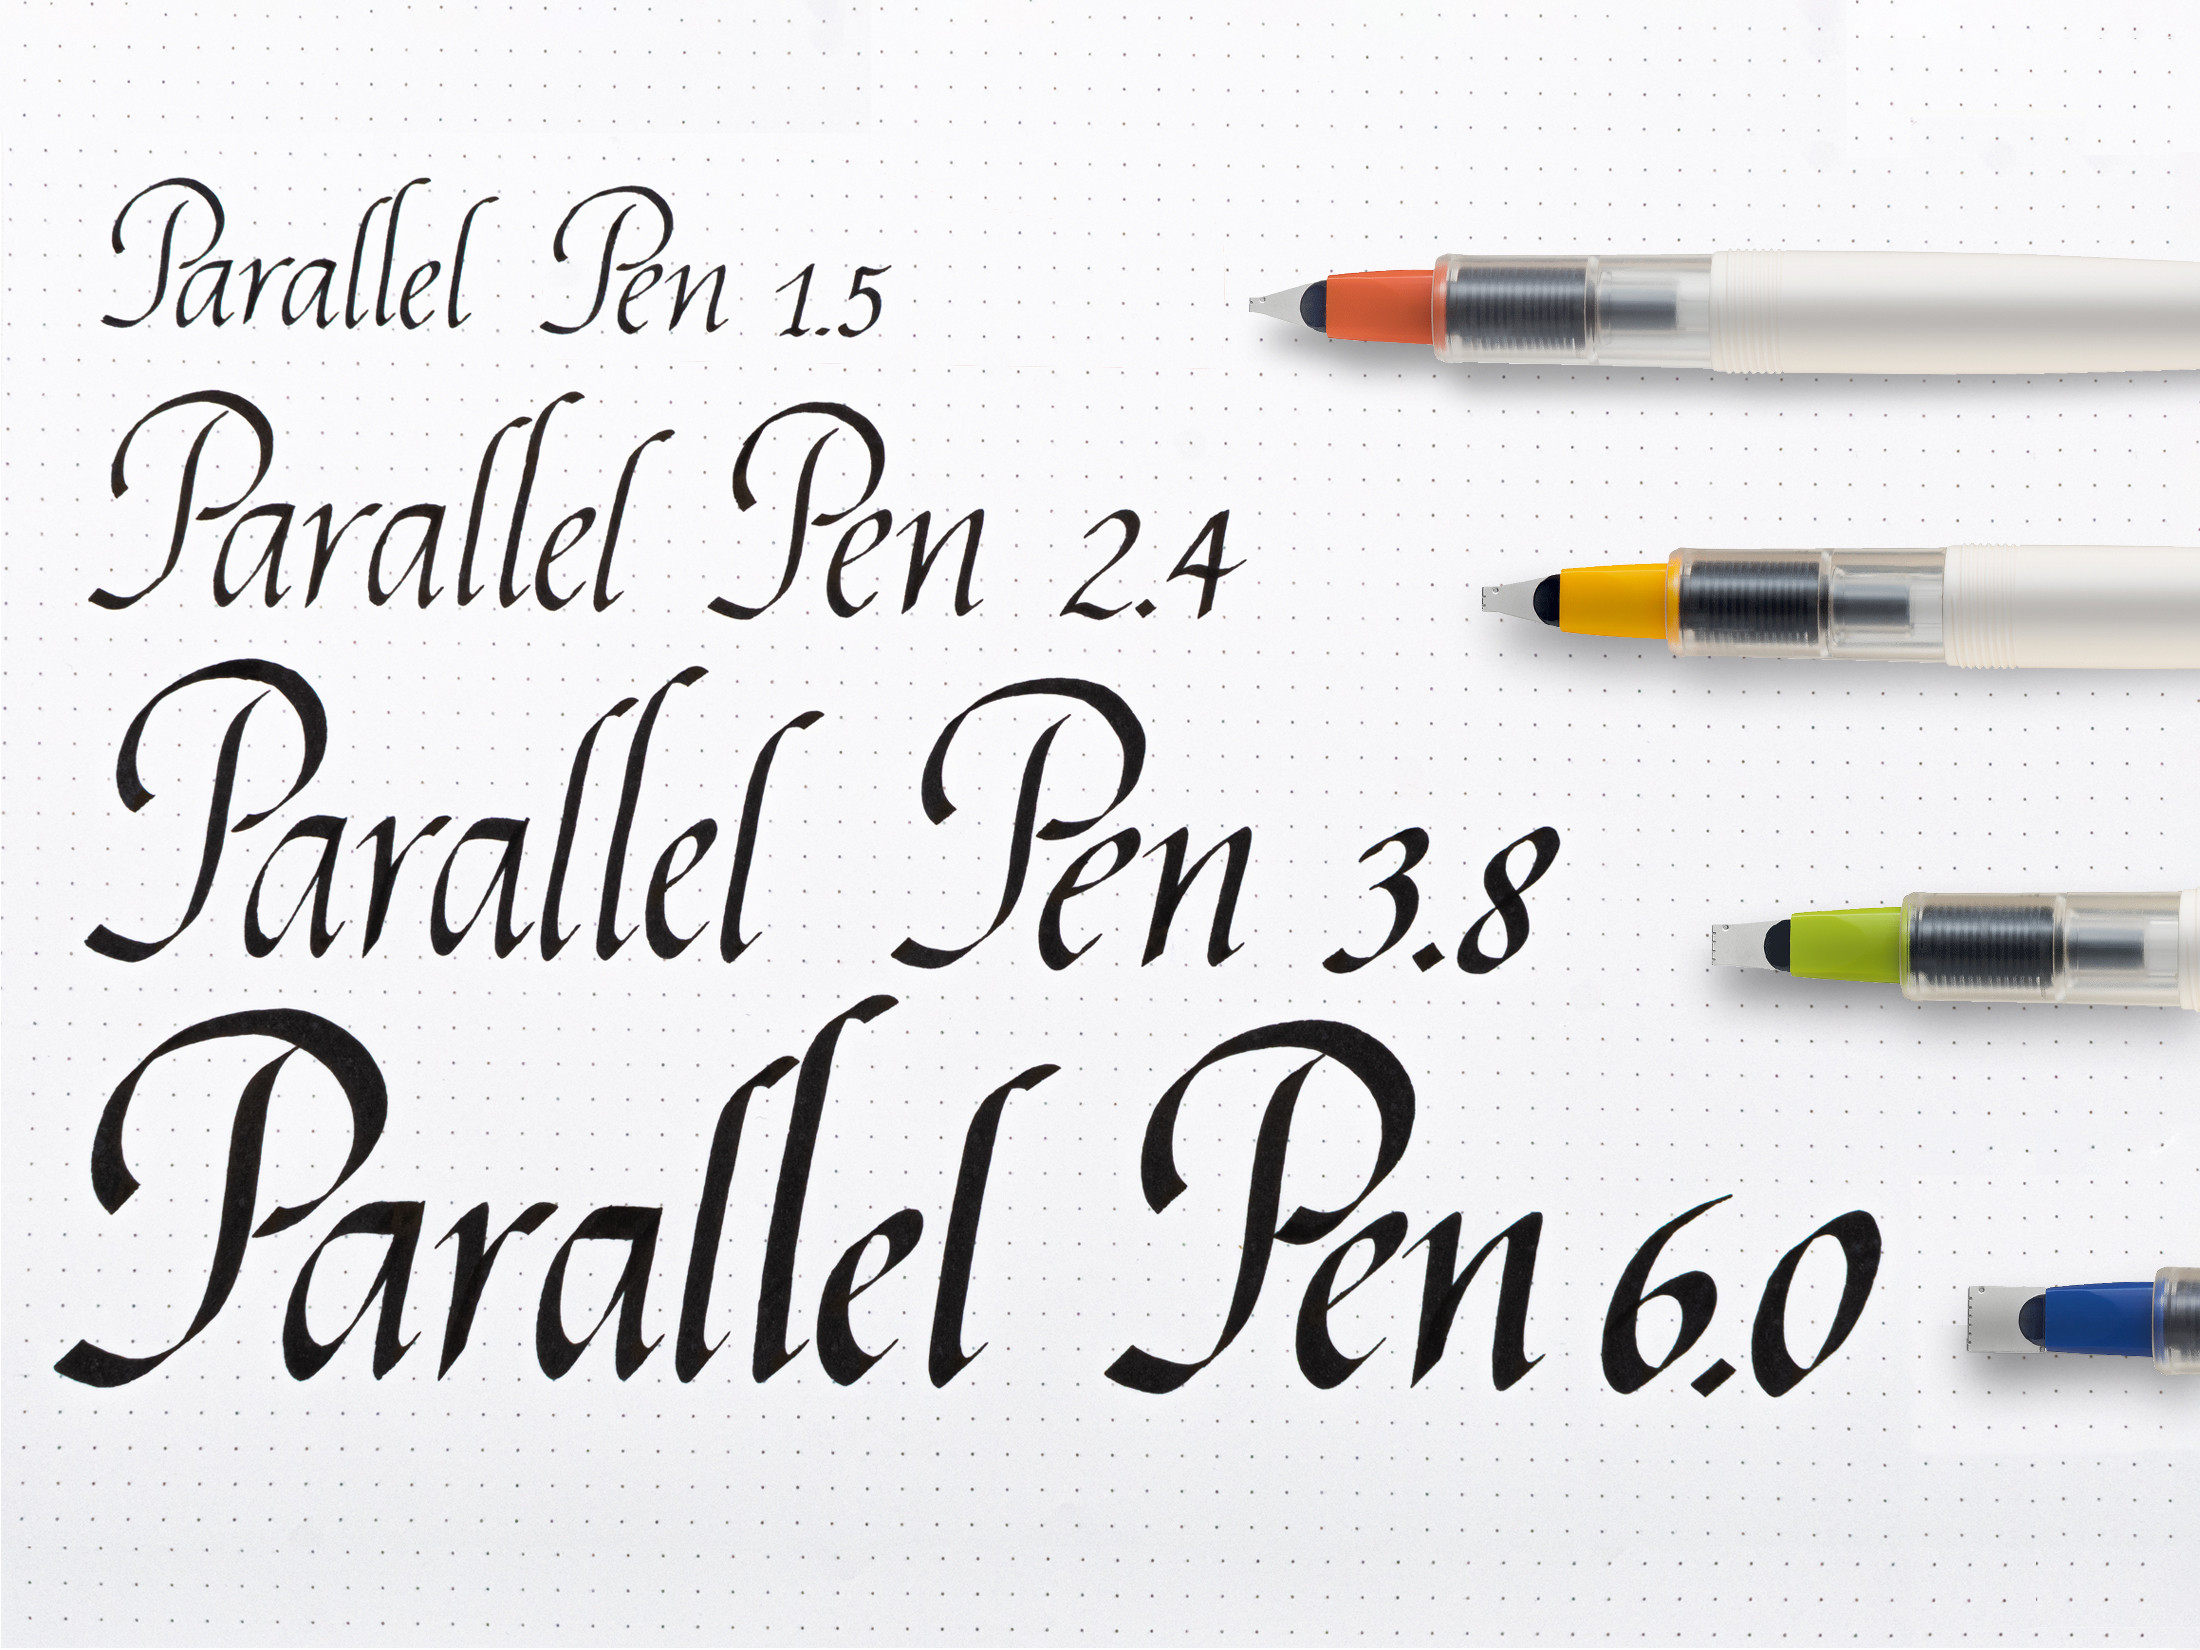 Parallel Pen 6.0